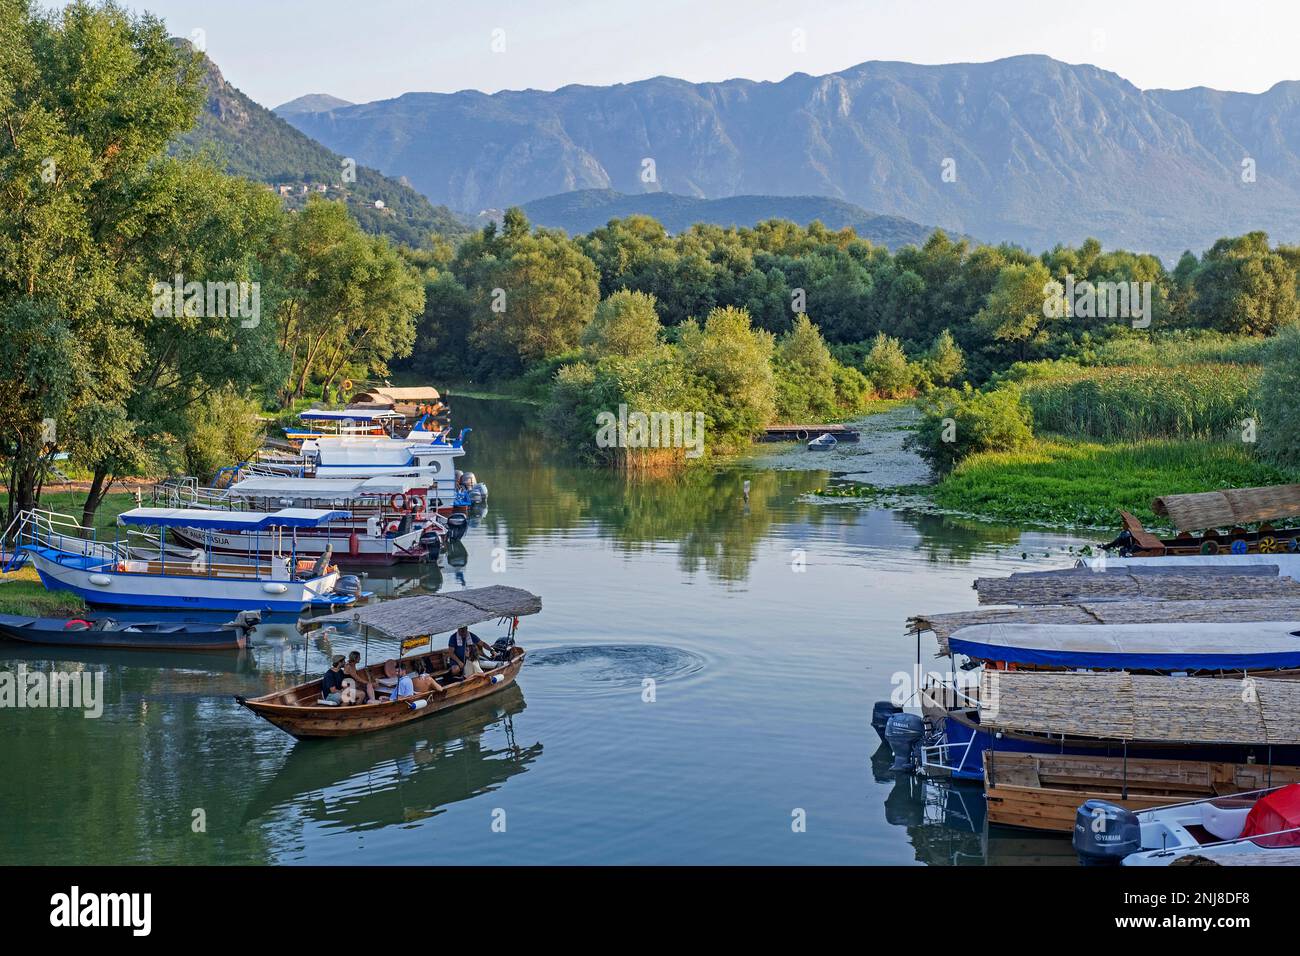 Barche turistiche a Virpazar sul fiume Crmnica che sfocia nel lago di Skadar, Parco Nazionale di Skadarsko Jezero, regione di Crmnica, Bar, Montenegro Foto Stock